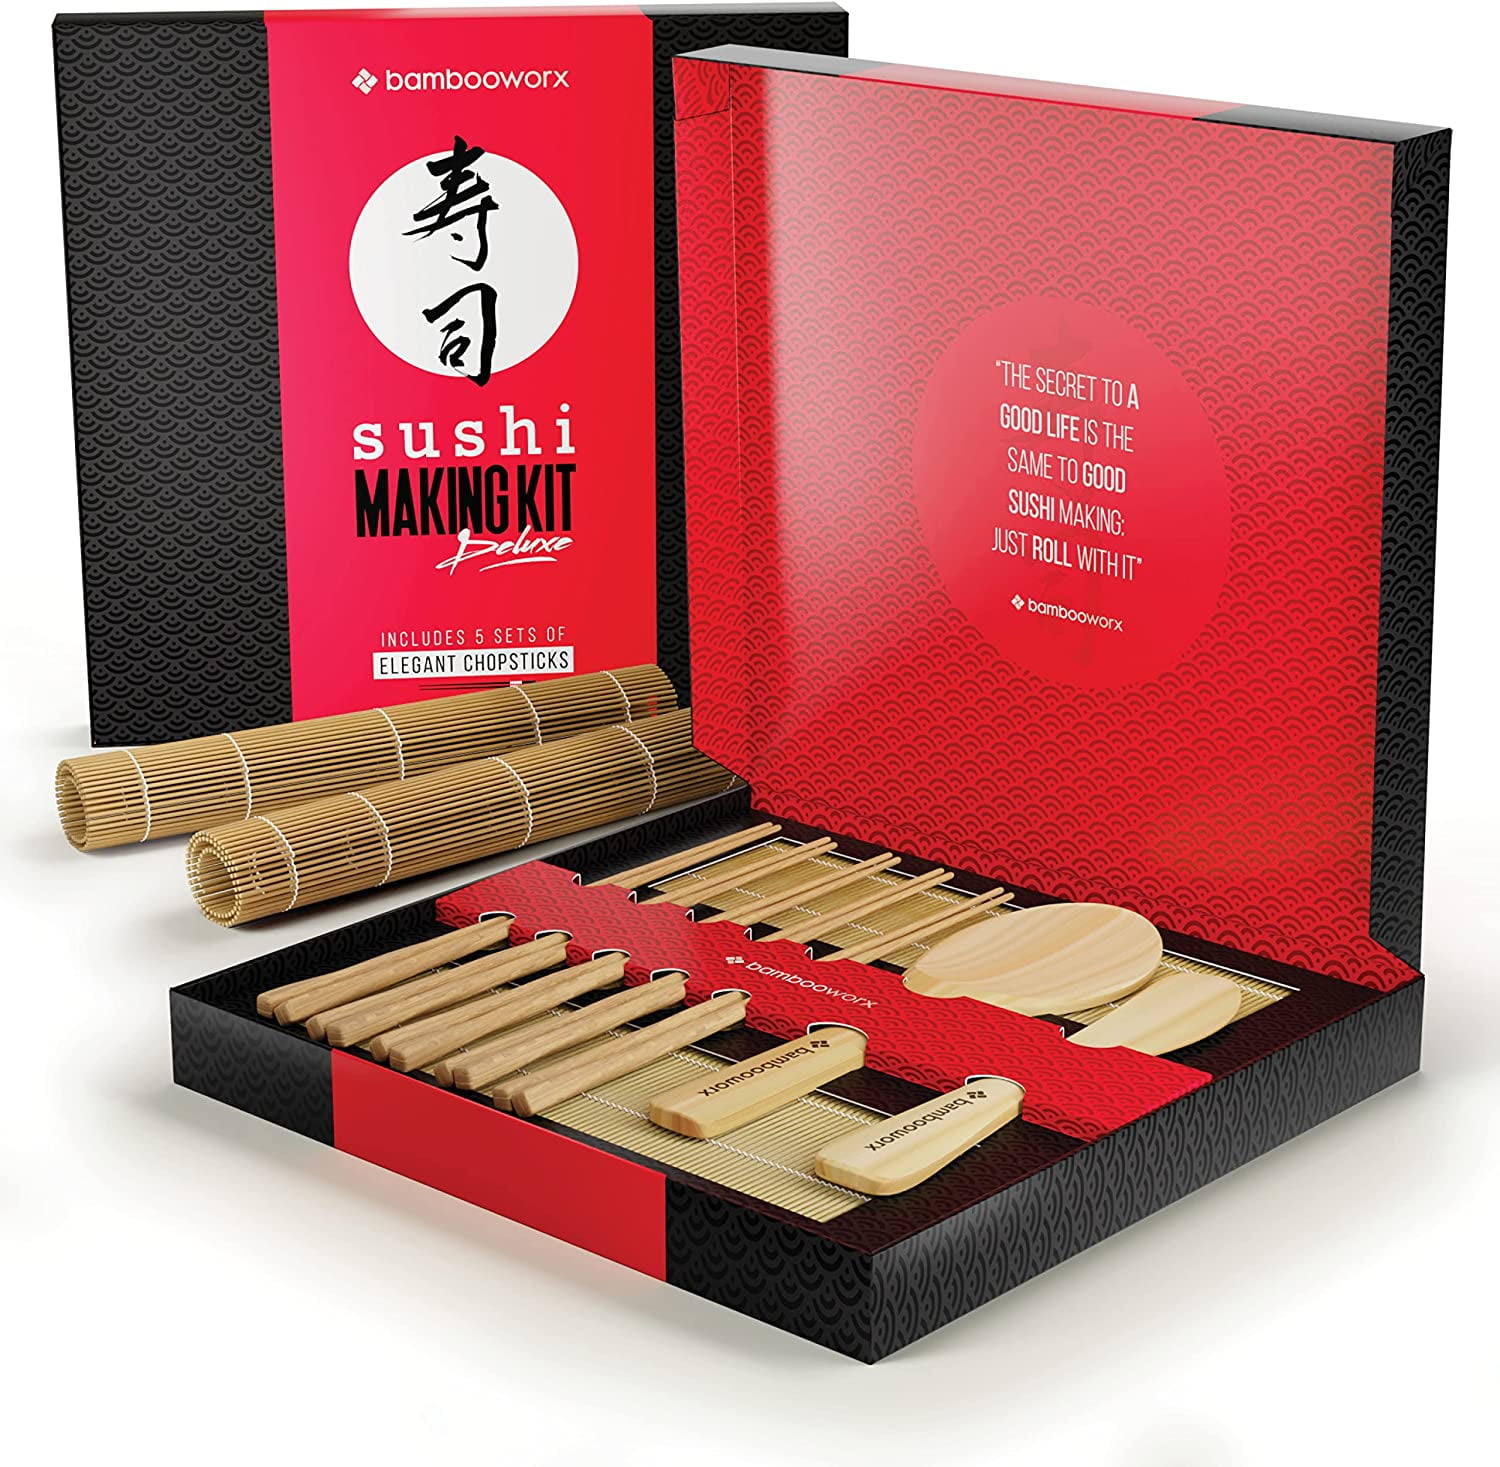 Delamu Sushi Making Kit 20 in 1 Sushi Bazooka Roller Kit with Chef’s Knife, Bamboo Mats, Bazooka Roller, Rice Mold, Temaki Sushi Mats